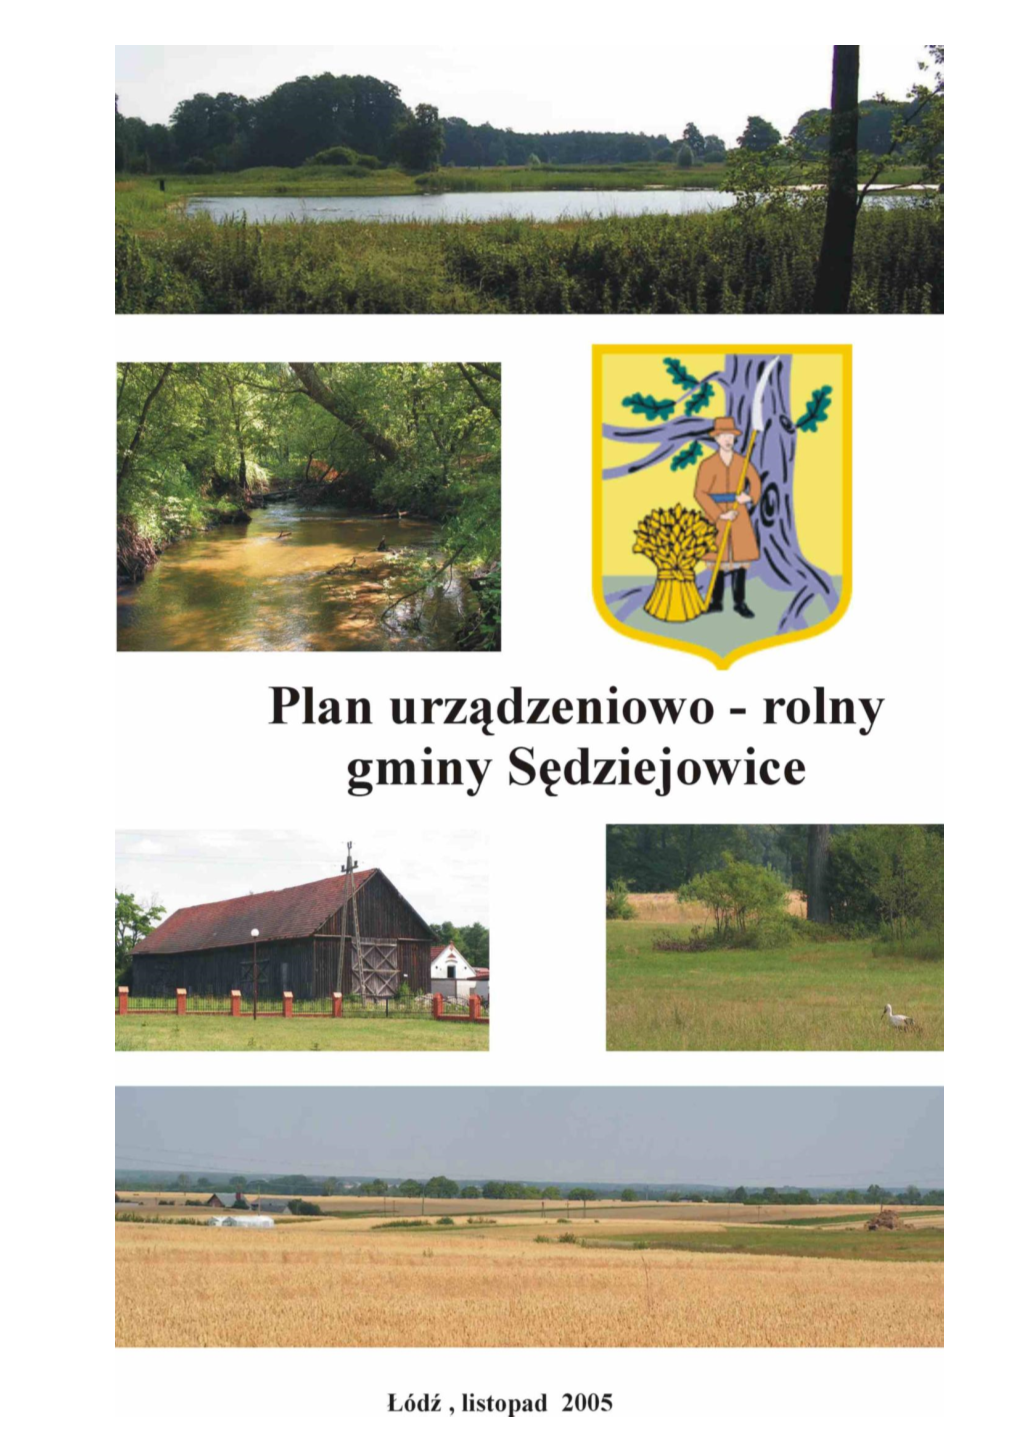 Rolny Gminy Sędziejowice